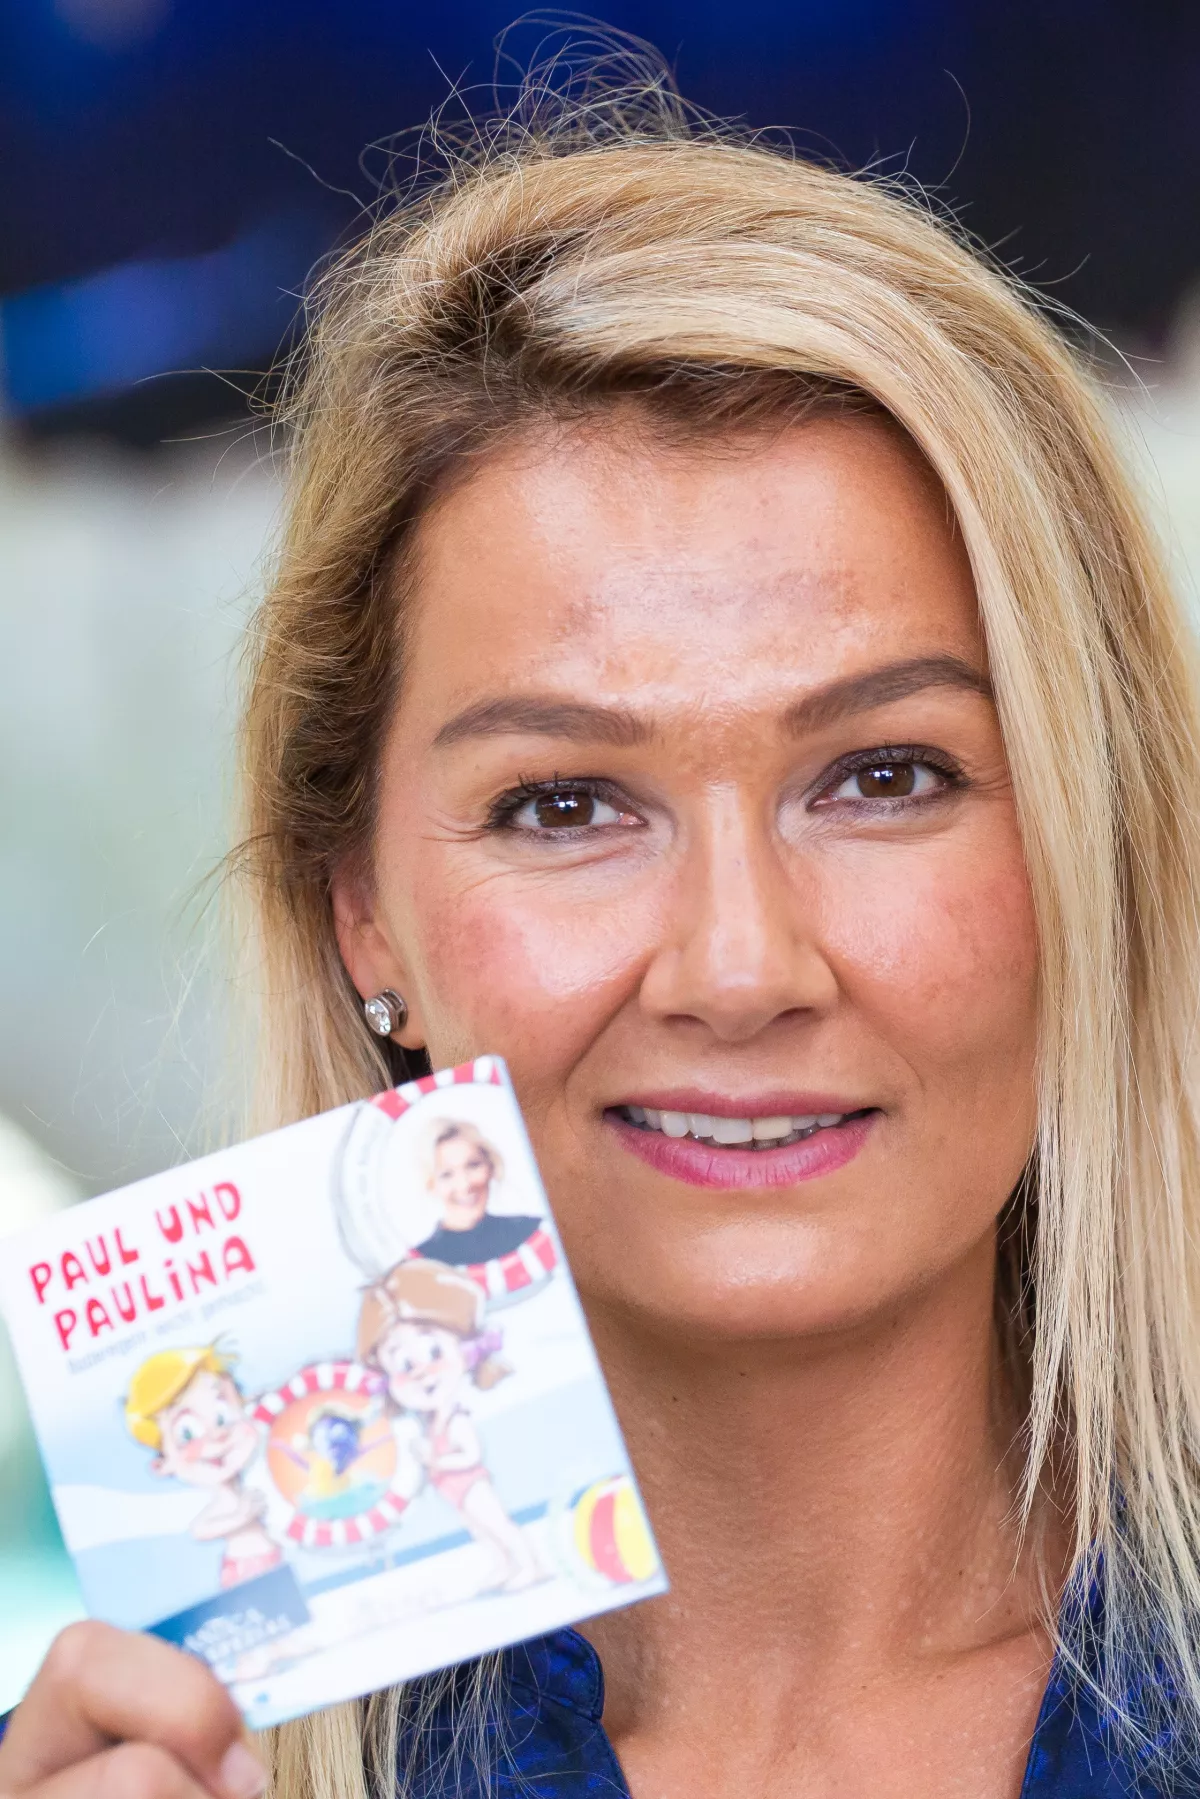 Franziska van Almsick steht im Erlebnisbad Rulantica und hält ein Exemplar ihres Buches "Paul und Paulina - Baderegeln leicht gemacht" in der Hand.